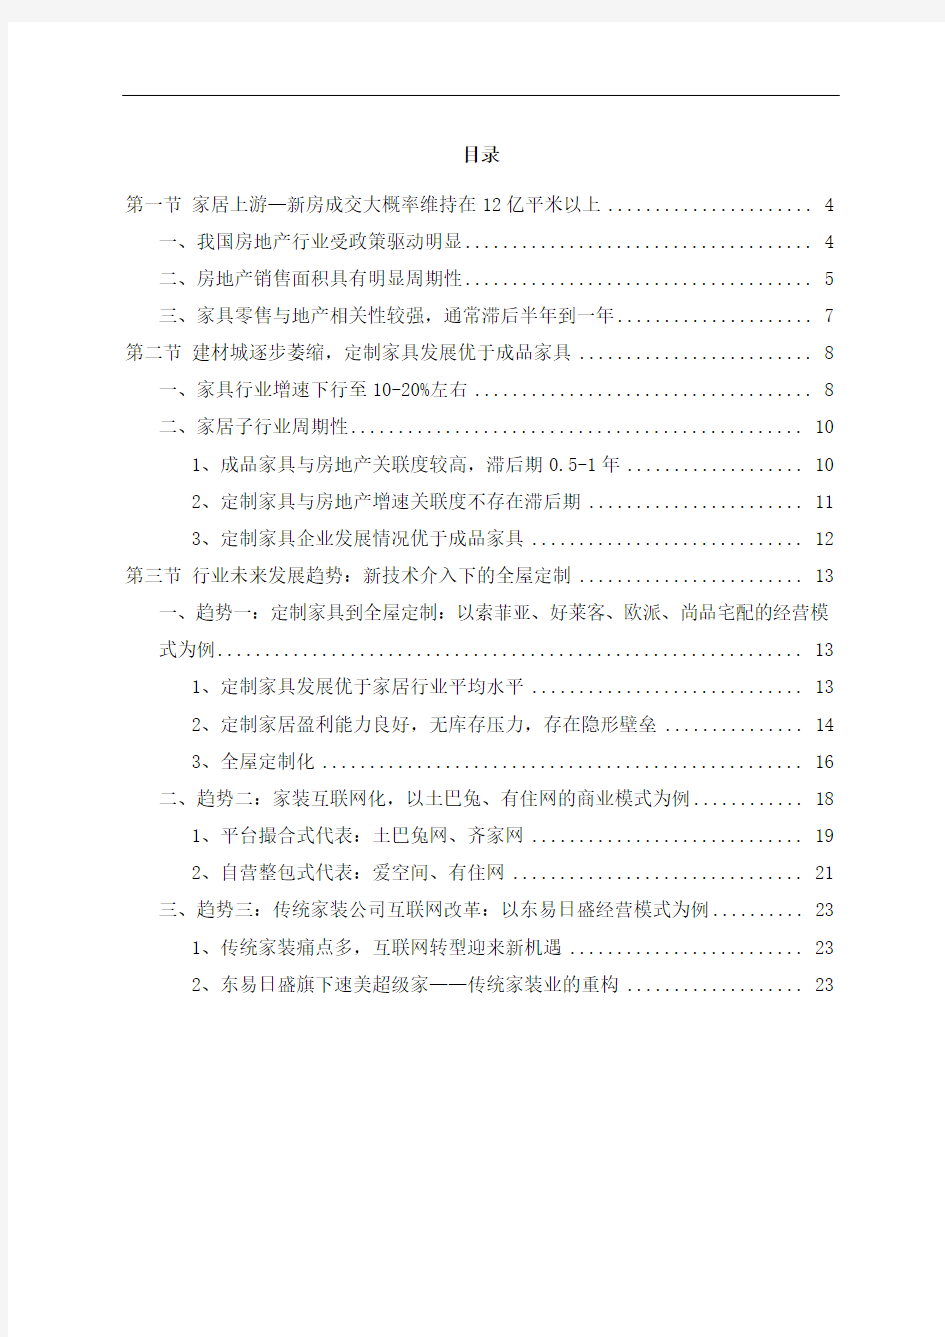 中国家具行业市场调研分析报告